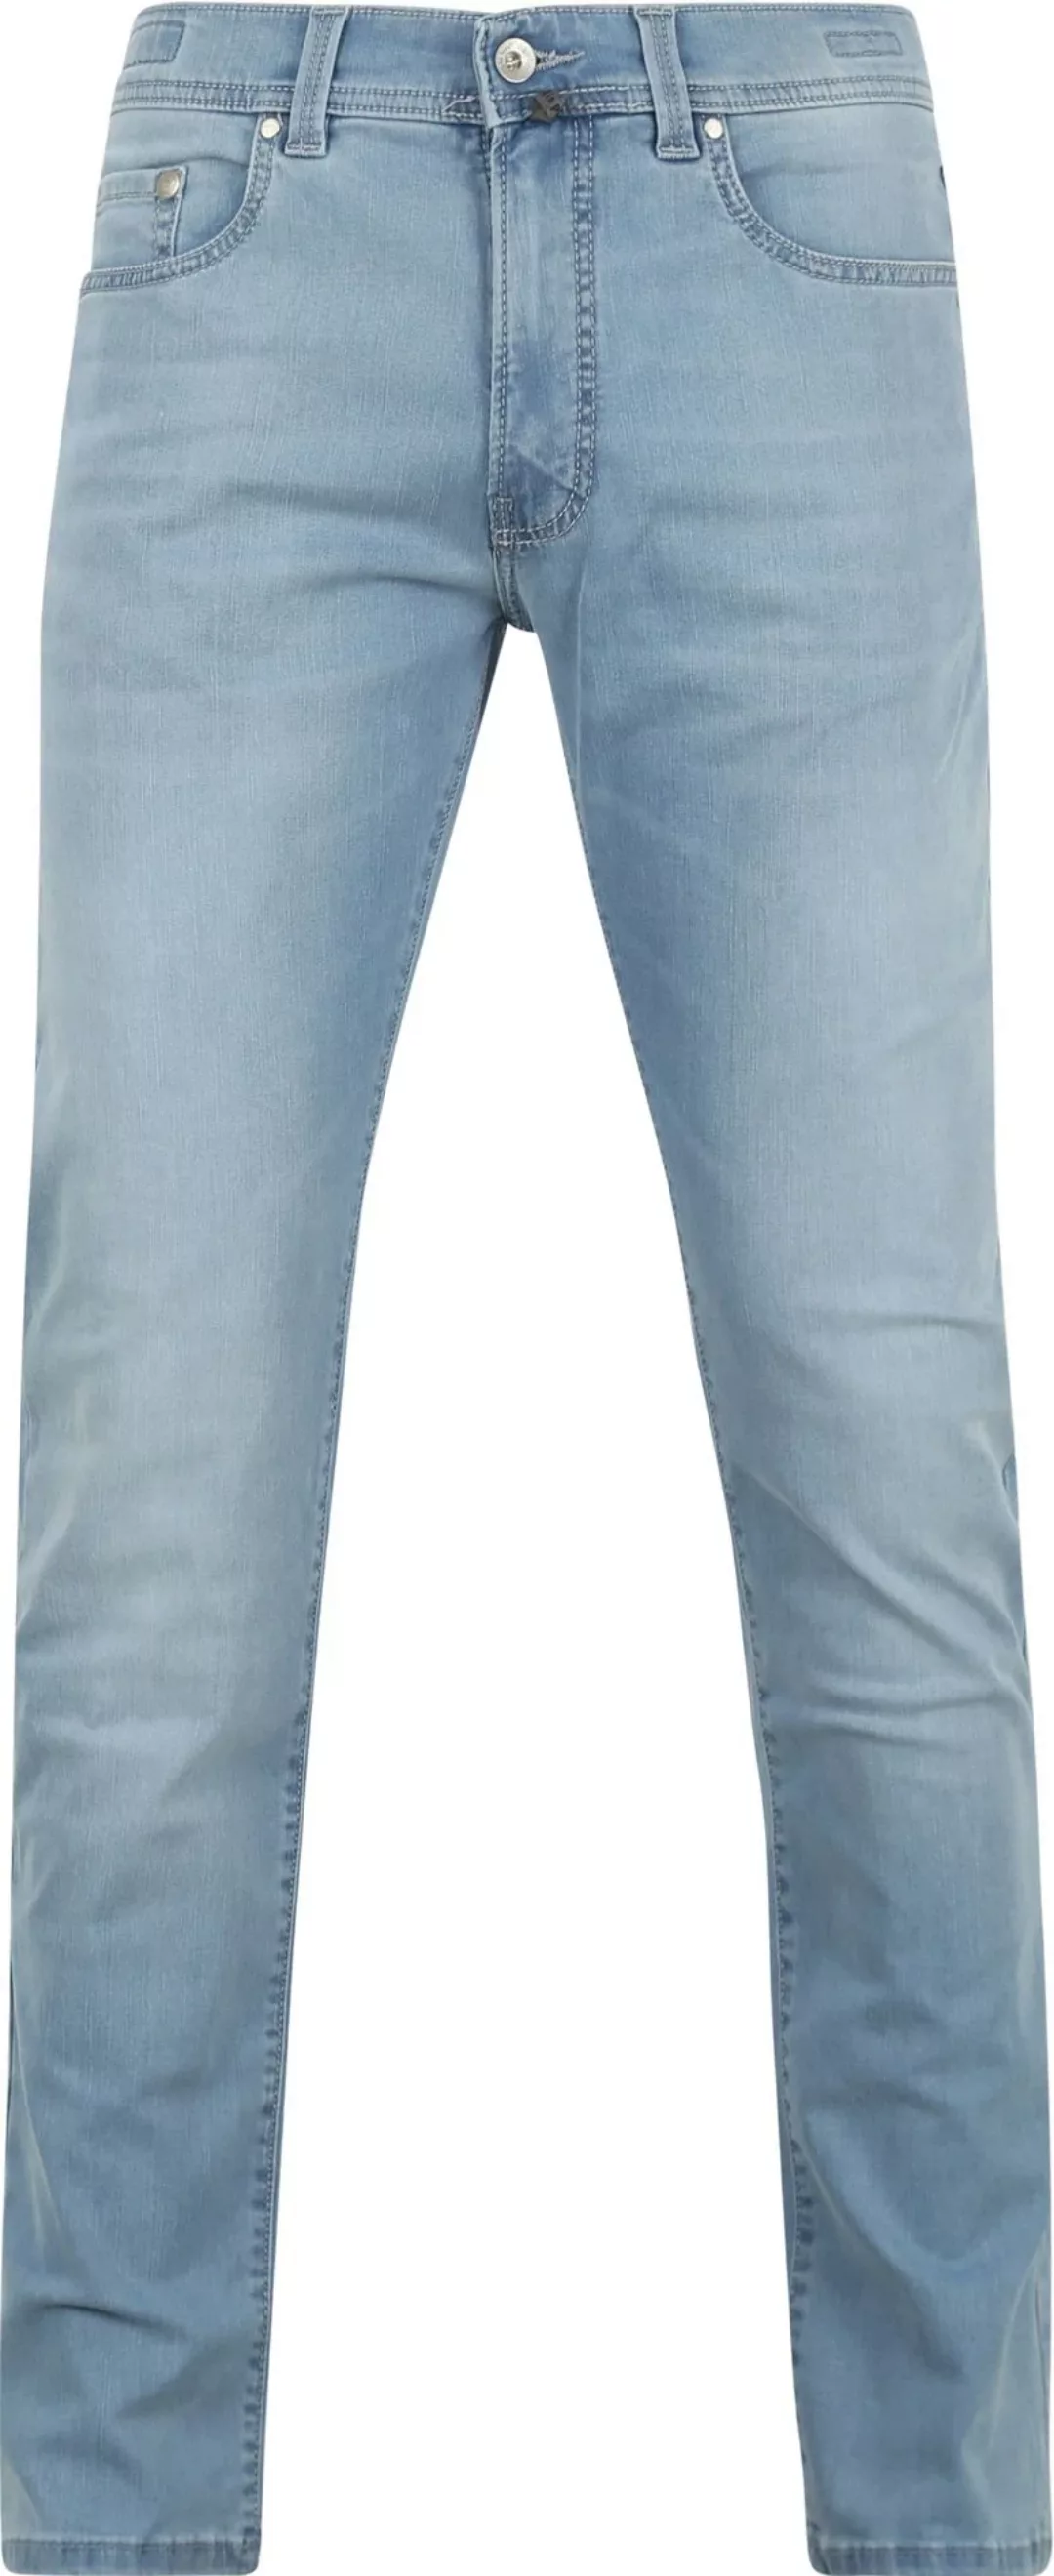 Pierre Cardin Jeans Lyon Tapered Future Flex Hellblau  - Größe W 34 - L 34 günstig online kaufen